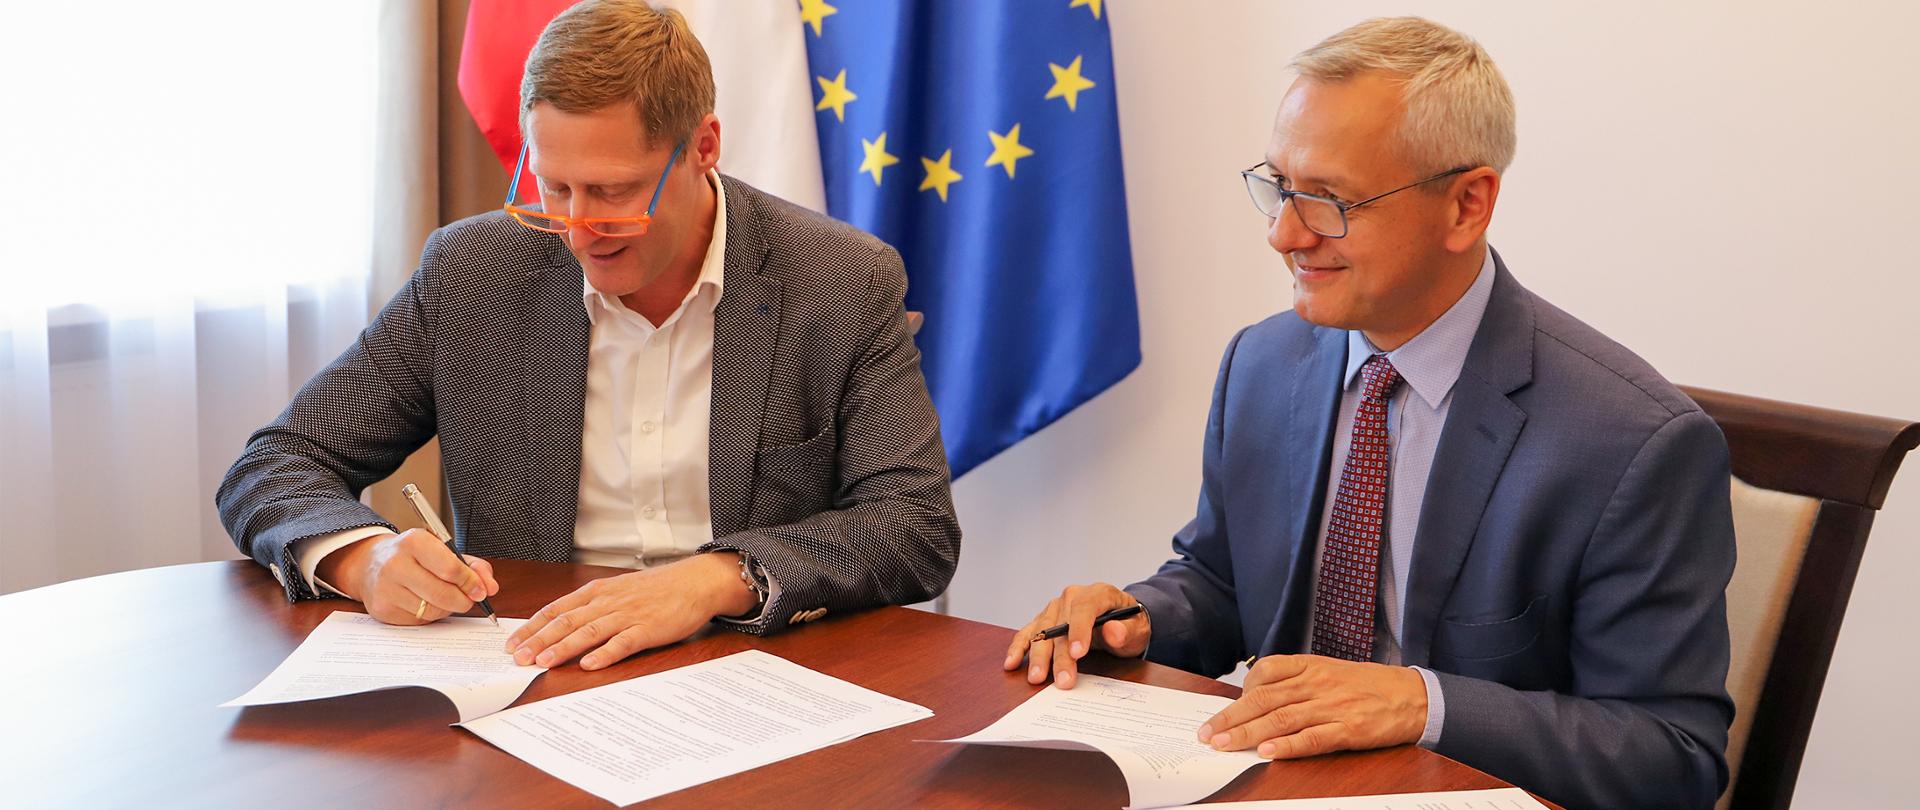 Dwóch mężczyzn siedzących przy stole podpisuje dokumenty. W tle flagi polska i unijna.